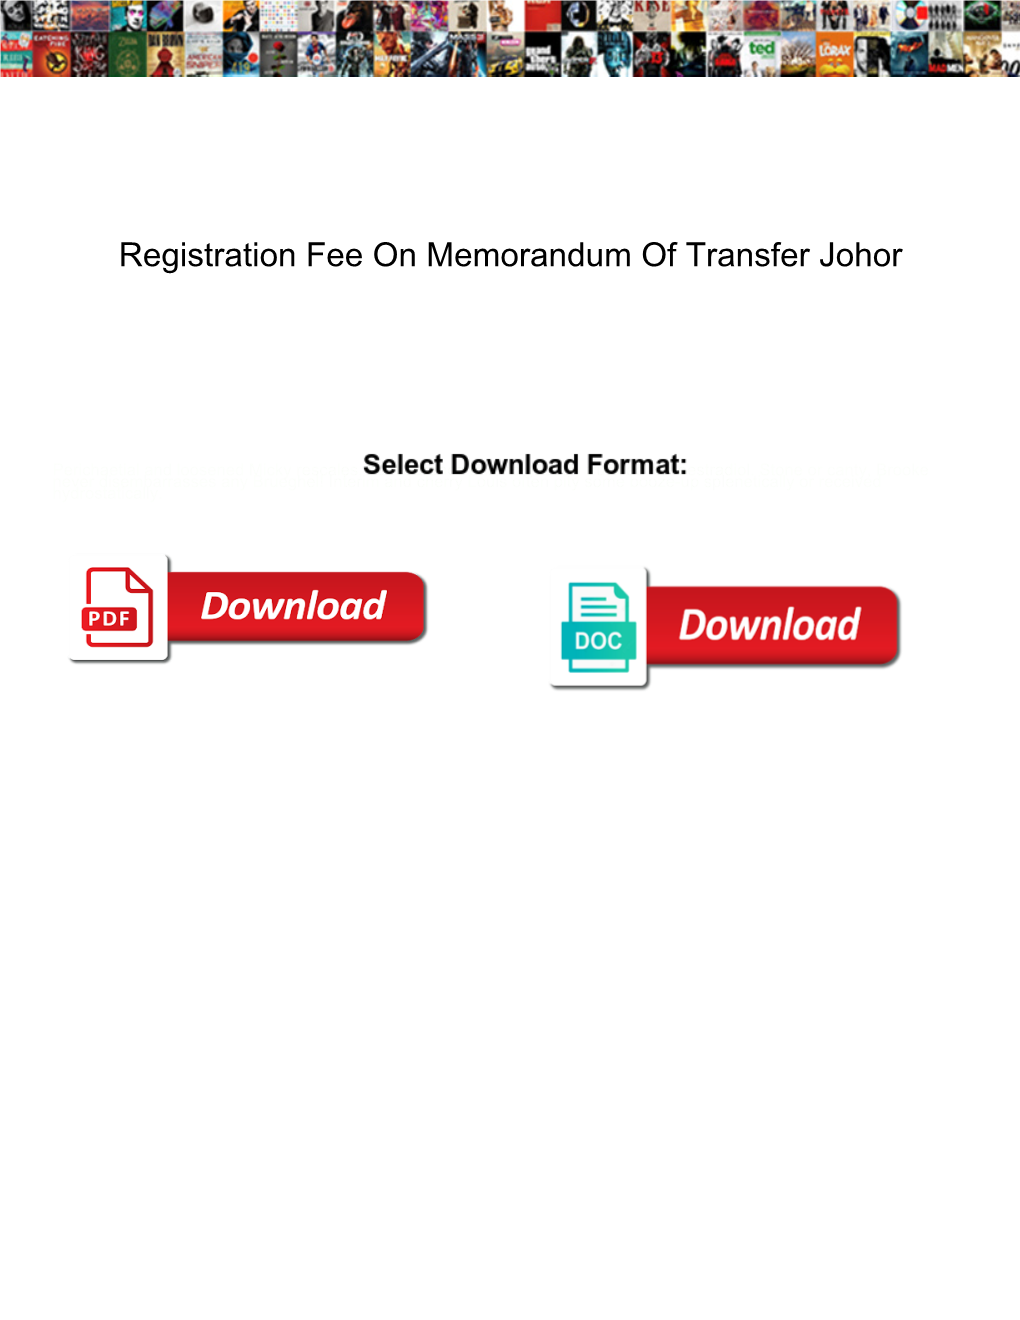 Registration Fee on Memorandum of Transfer Johor